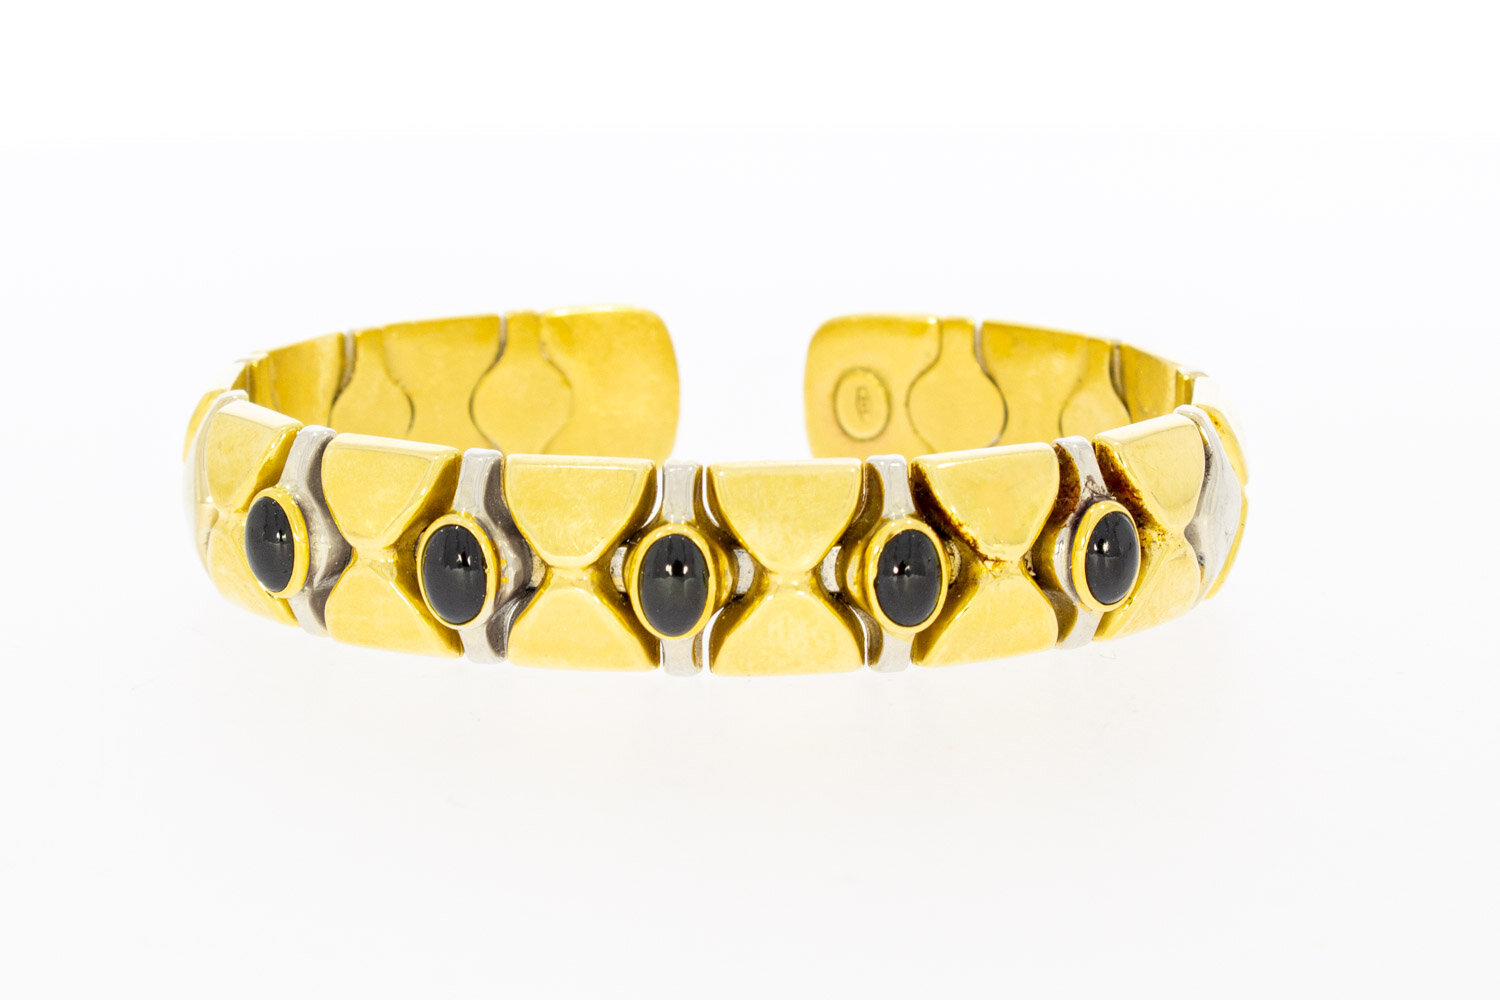 14 karaat gouden Clip Saffier armband